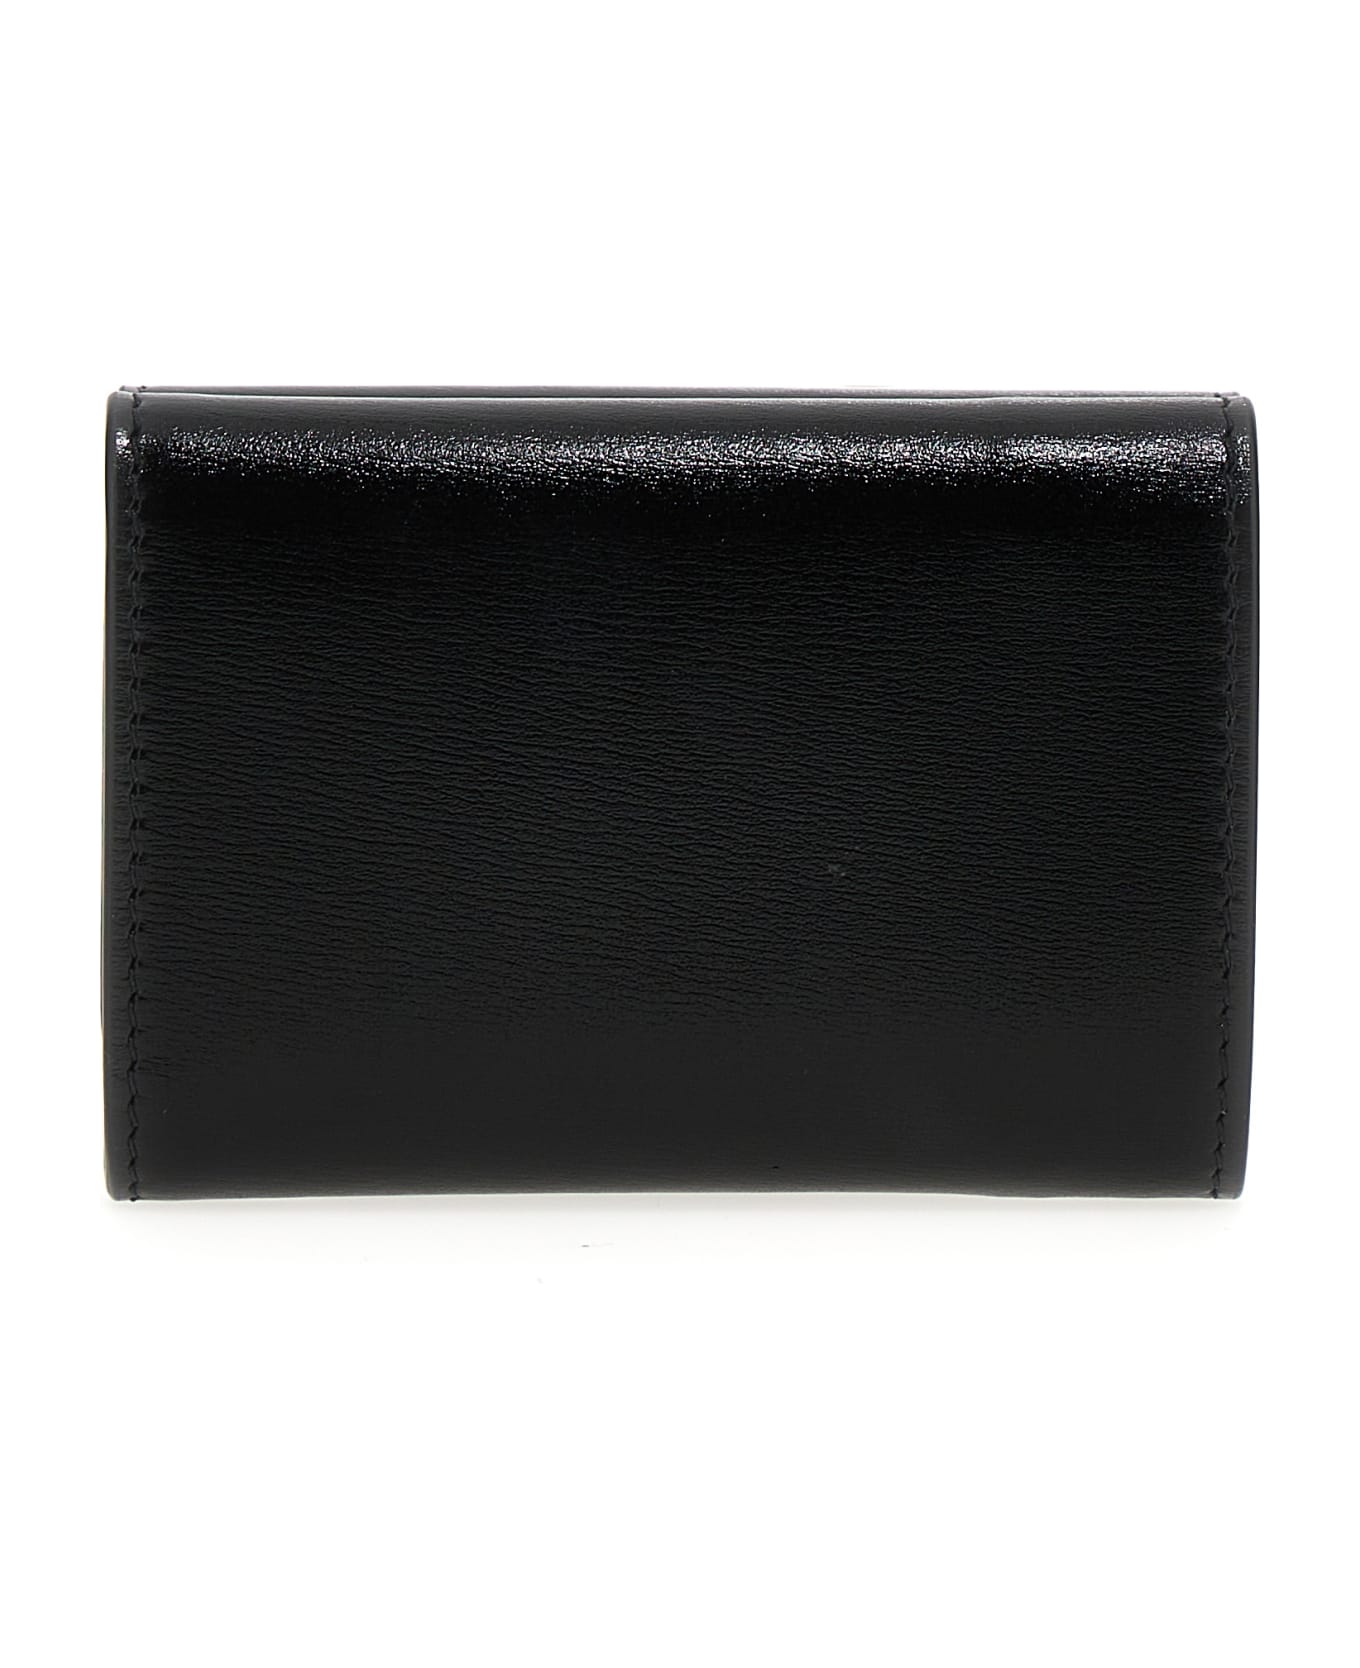 Jil Sander Black Calf Leather Wallet - 001